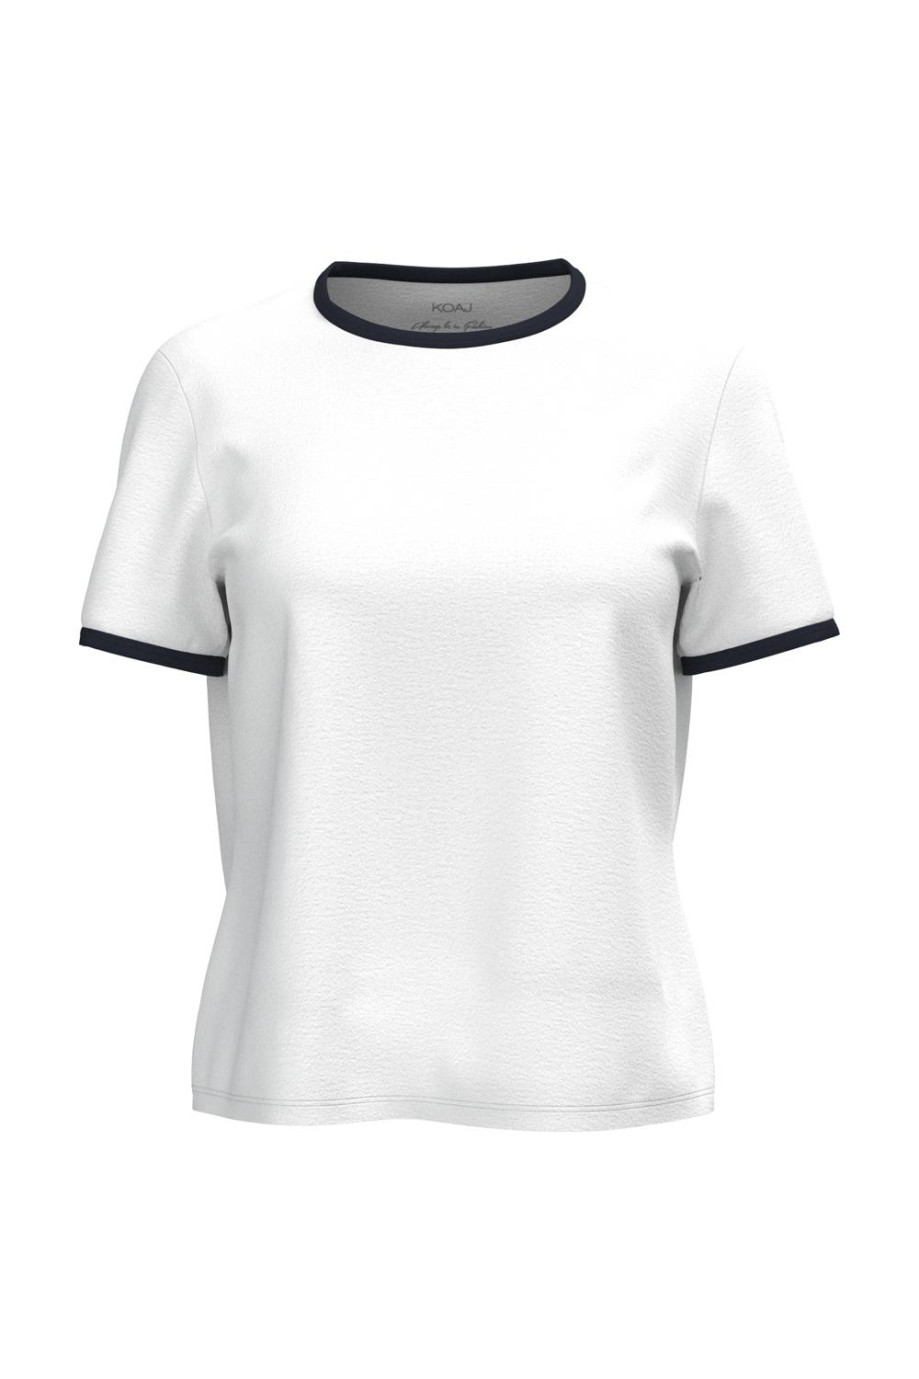 Camiseta unicolor en algodón manga corta con contrastes